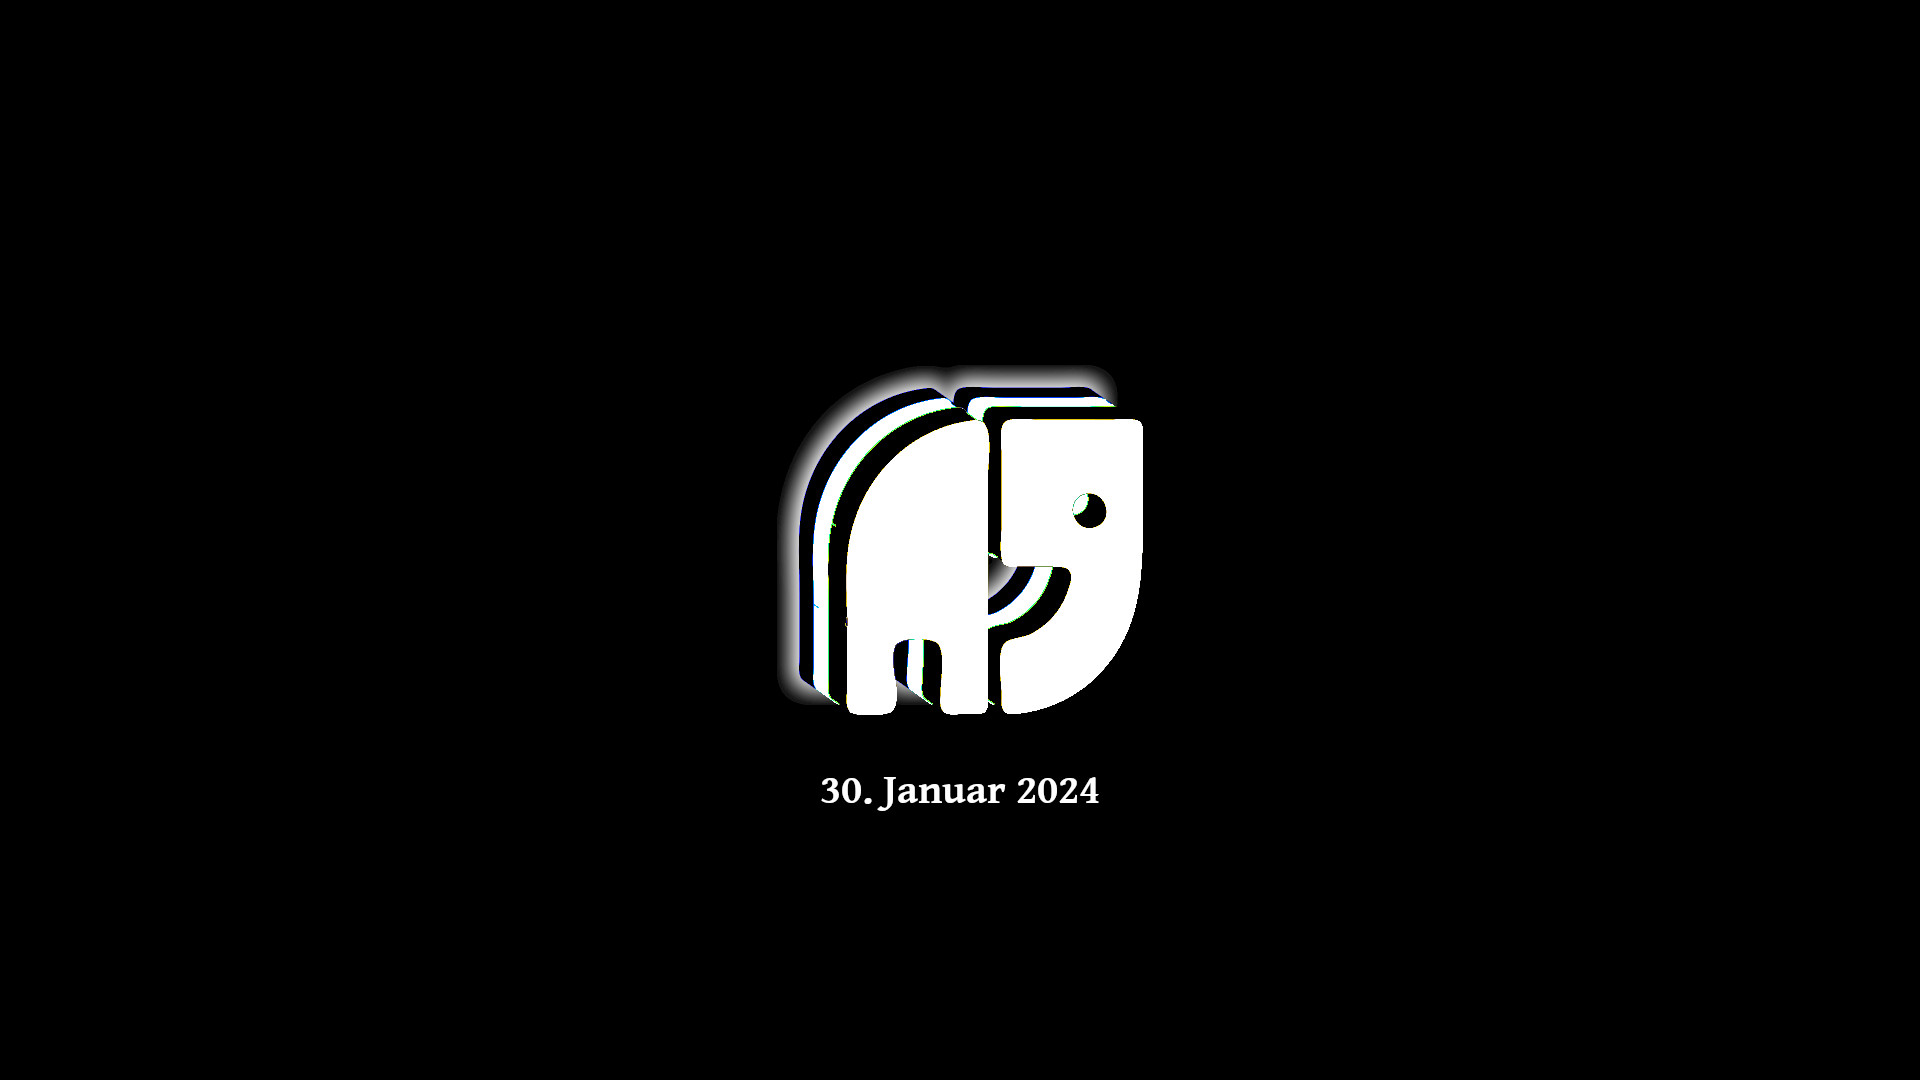 Schwarzes Bild mit einem stilisierten, fast würfelförmigen Elefanten als geschichtete schwarz weiße Silhouette. Darunter das Datum 30. Januar 2024